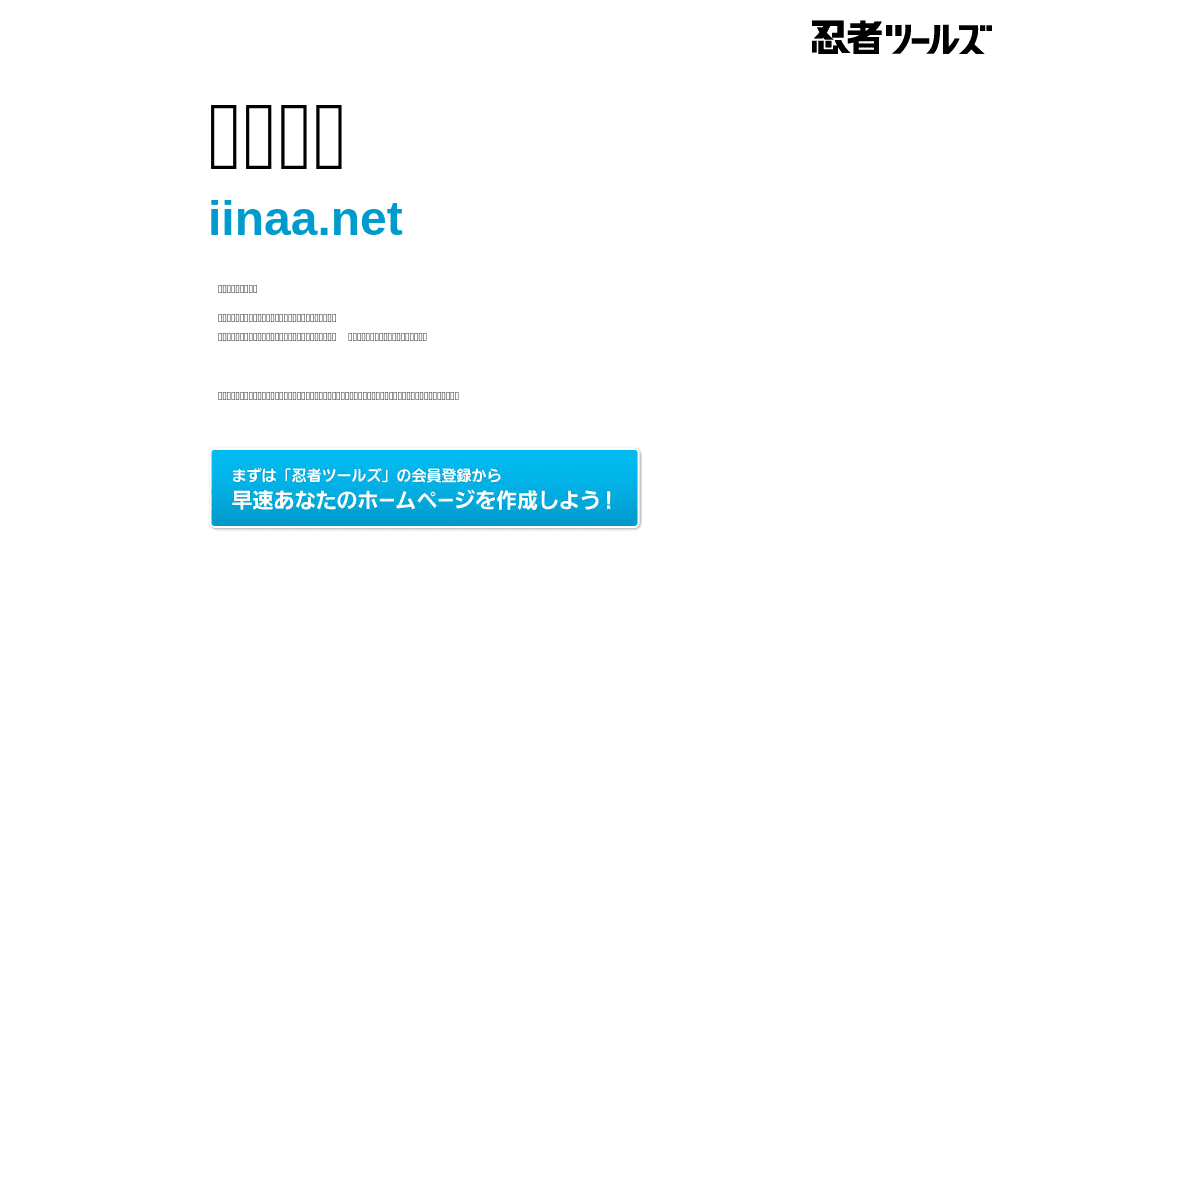 A complete backup of https://iinaa.net